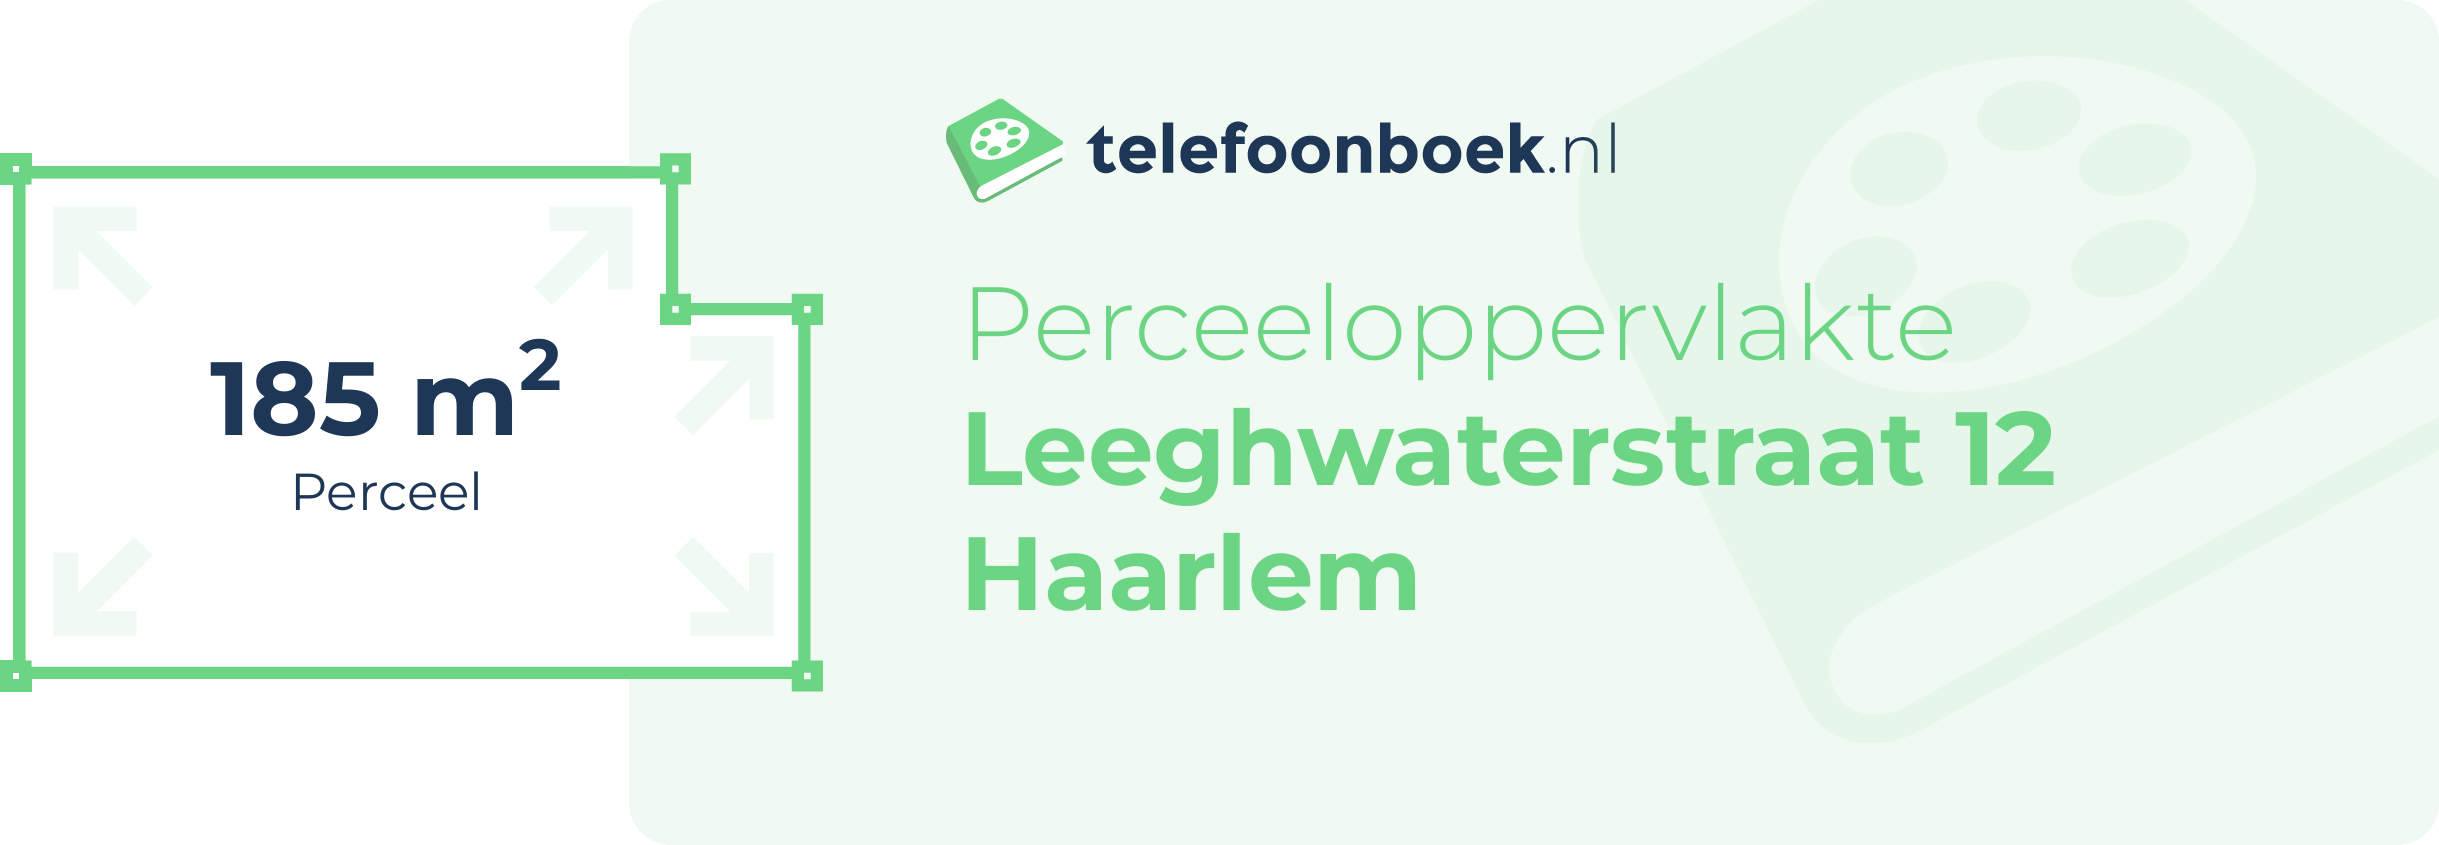 Perceeloppervlakte Leeghwaterstraat 12 Haarlem